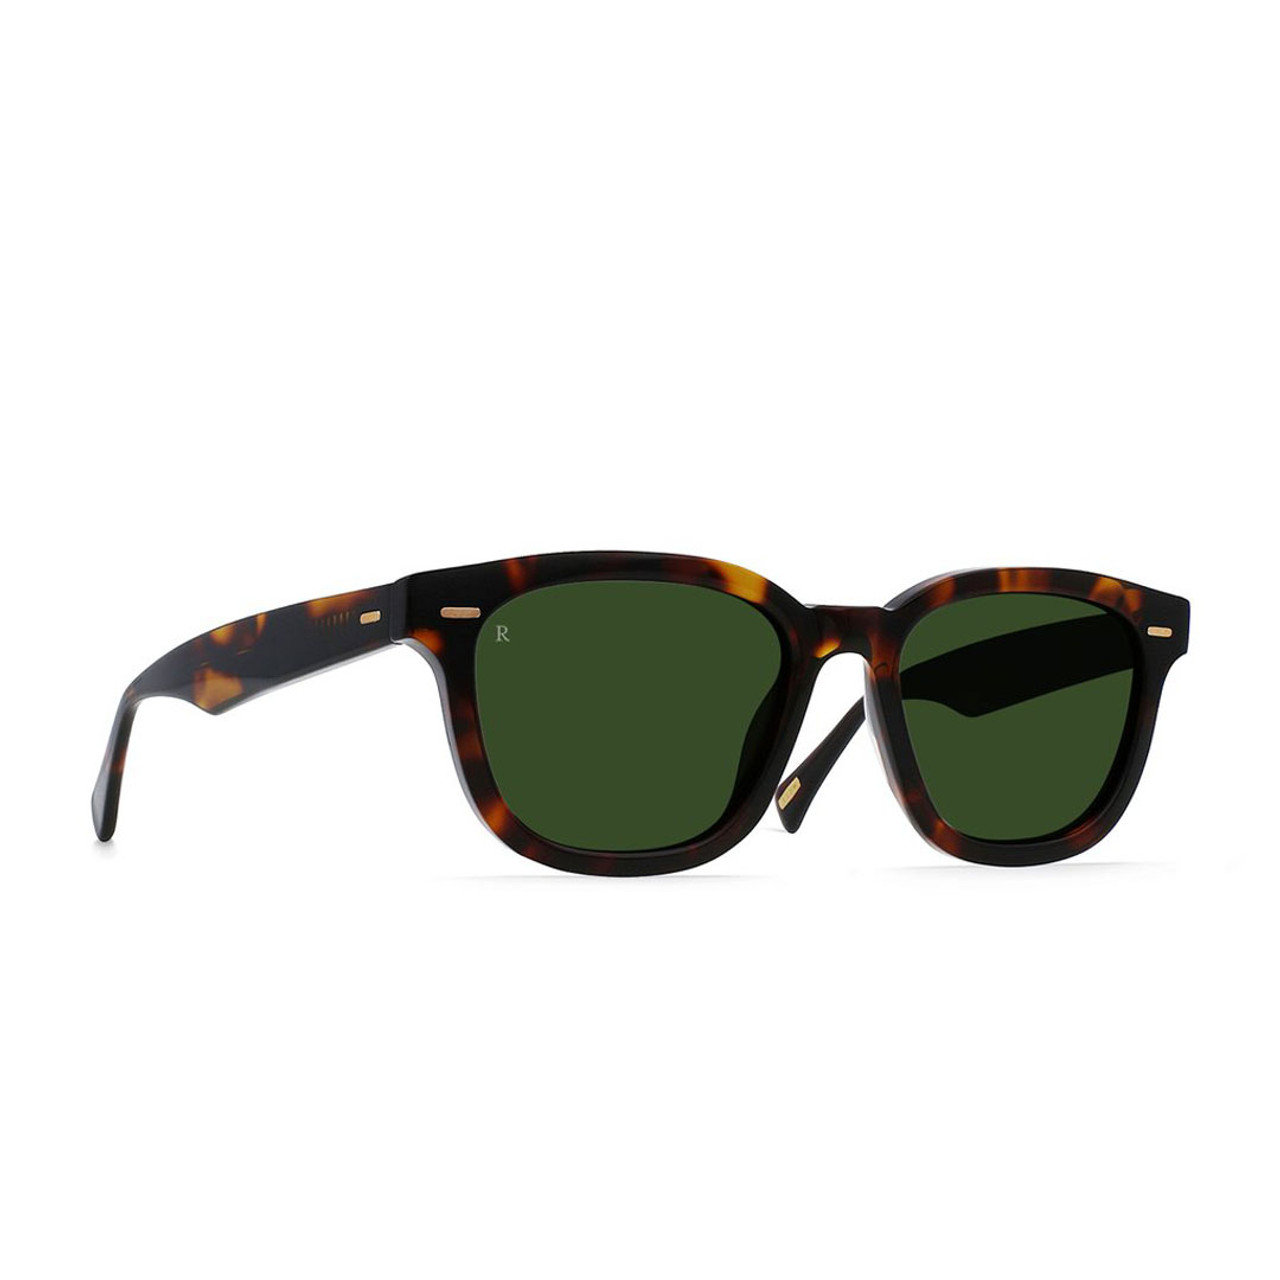 Raen Myles Sunglasses - Kola Tortoise/Bottle Green - TYLER'S